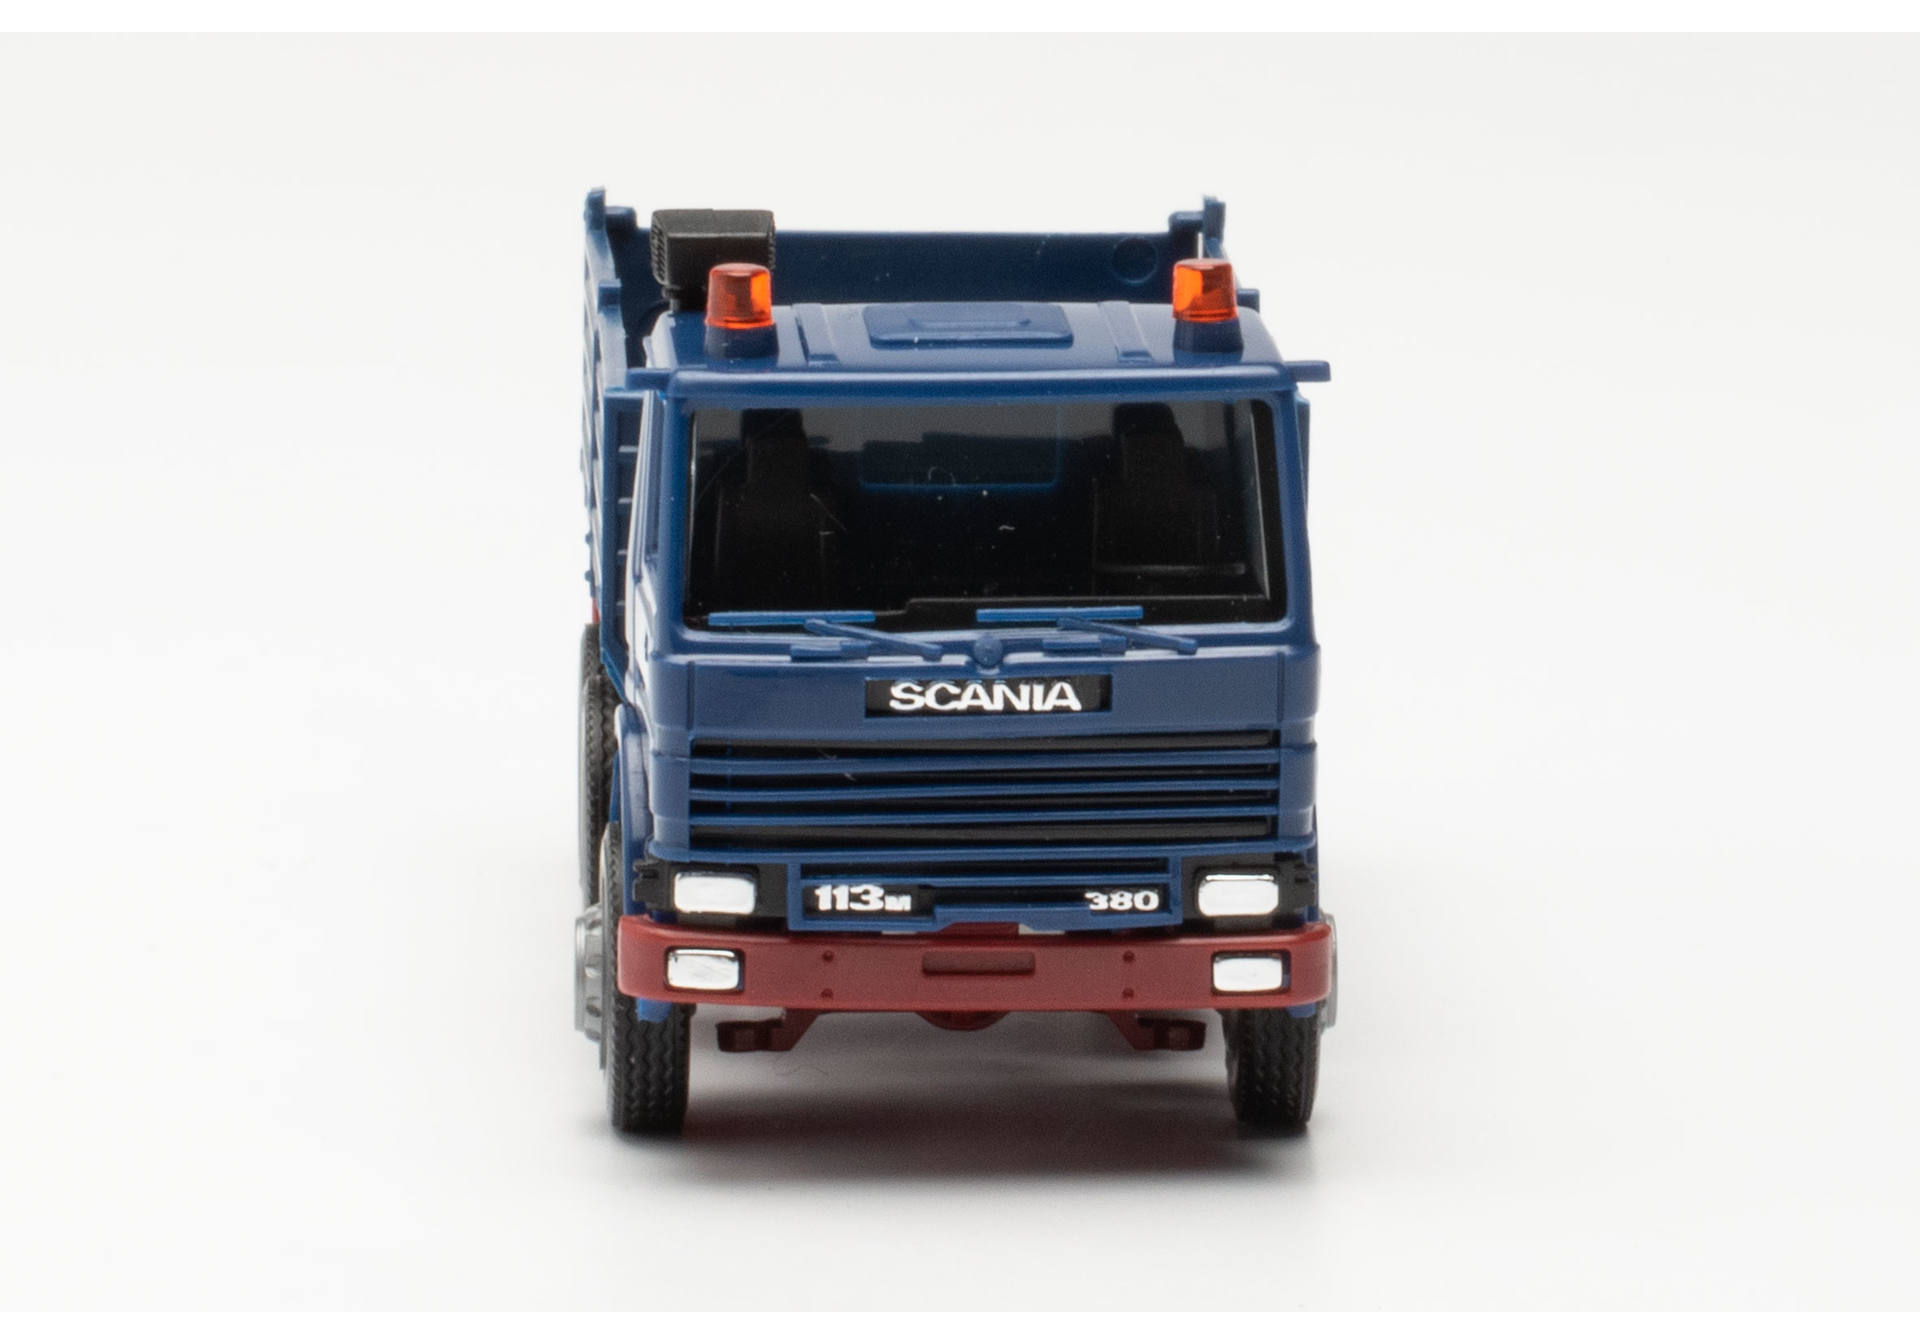 Scania 113M 380 tipper truck (BASIC)